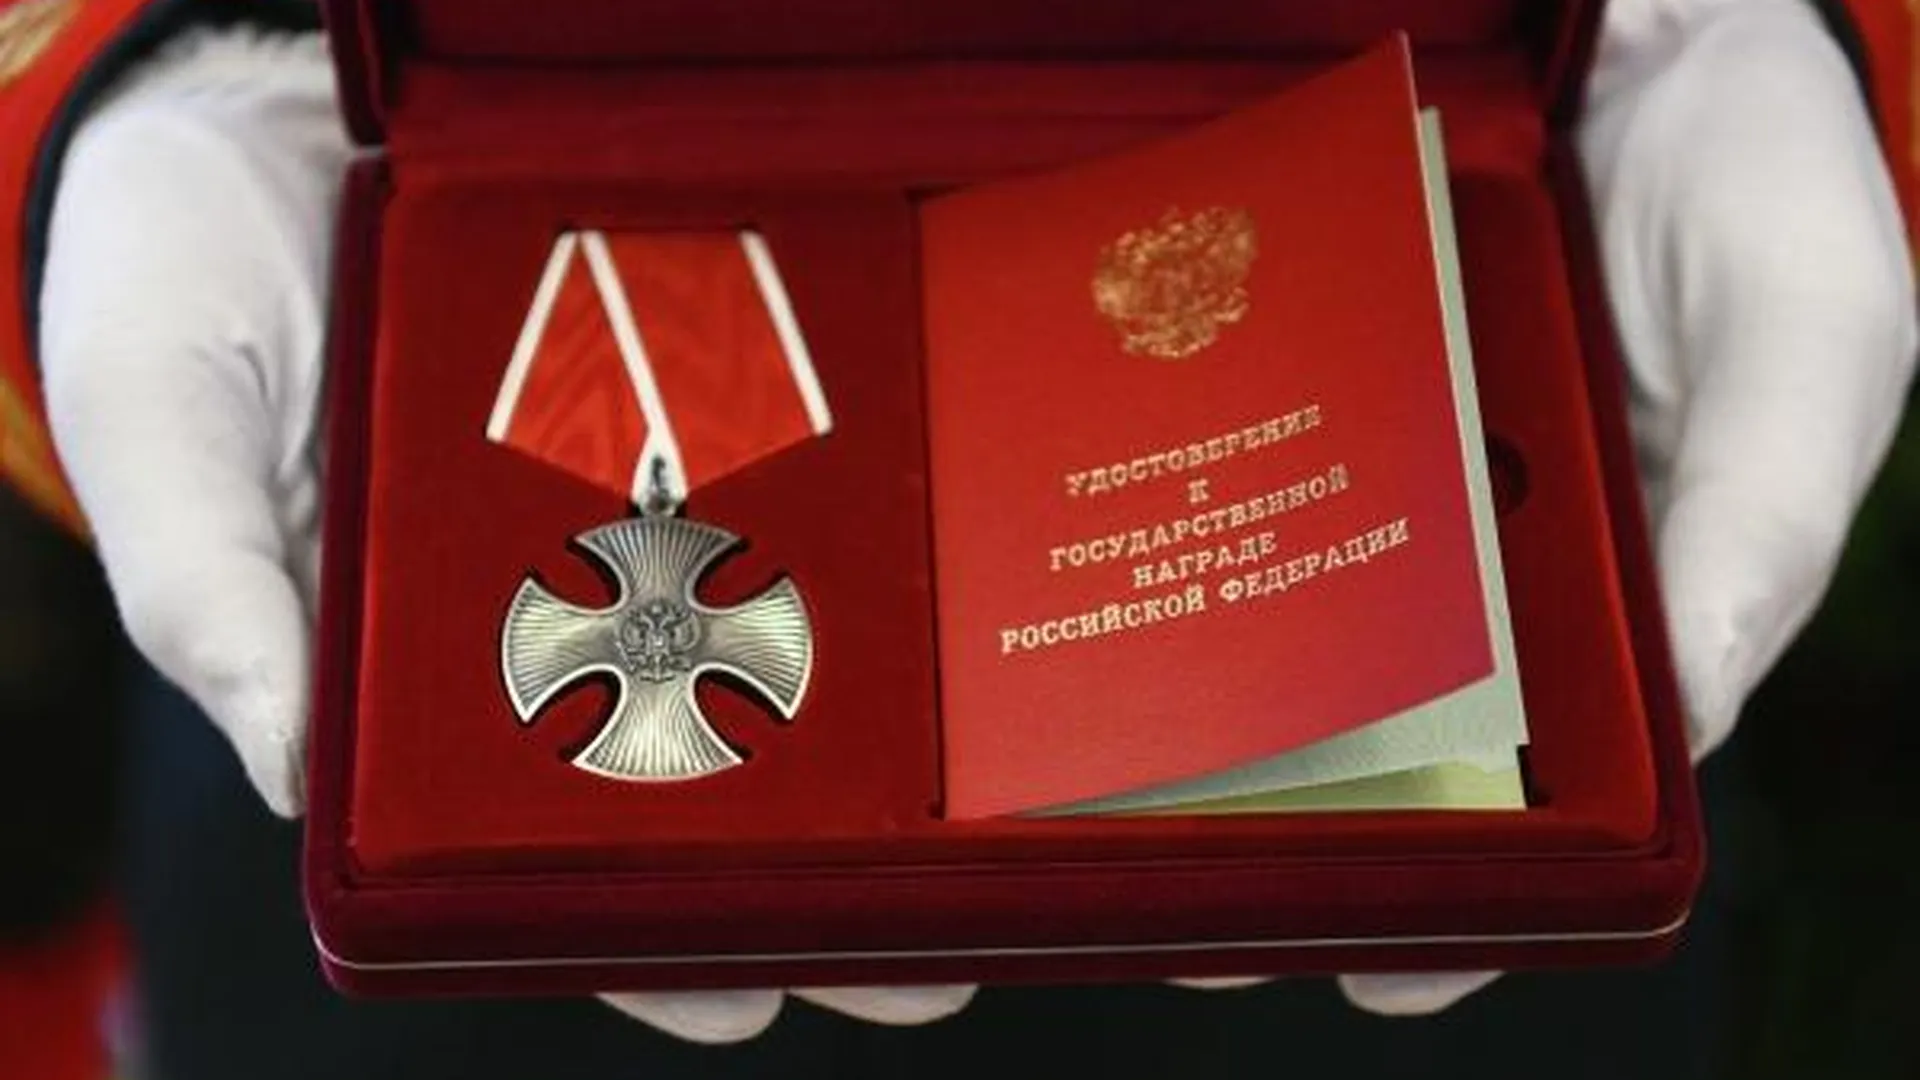 Членов экипажа сбитого Ил-76 посмертно наградили орденами Мужества